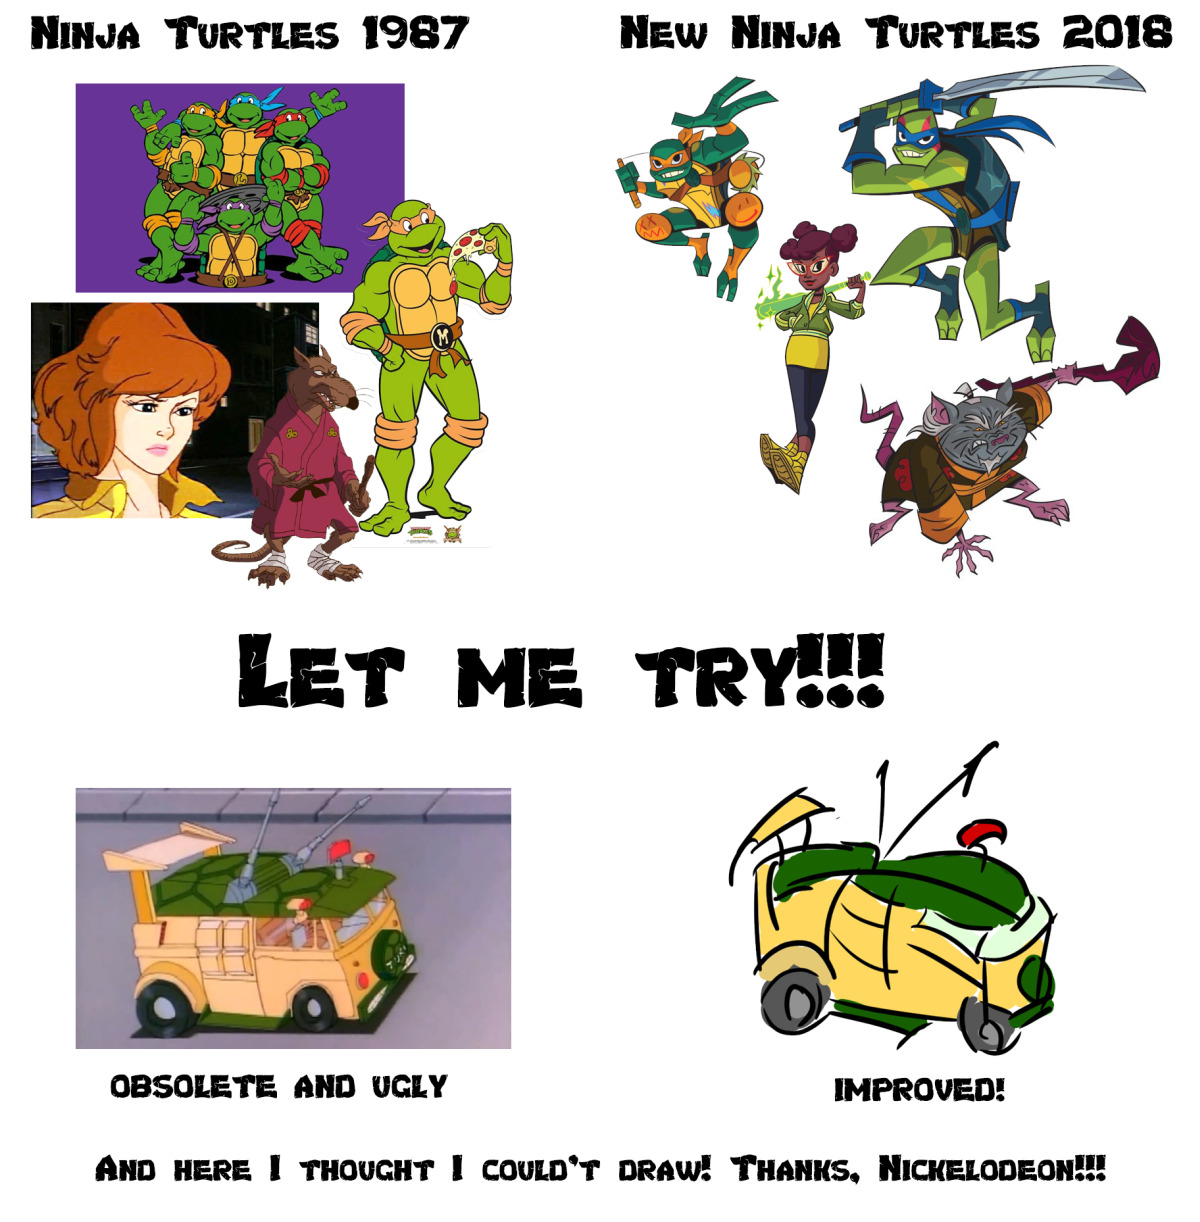 New 2018 ninja Turtles